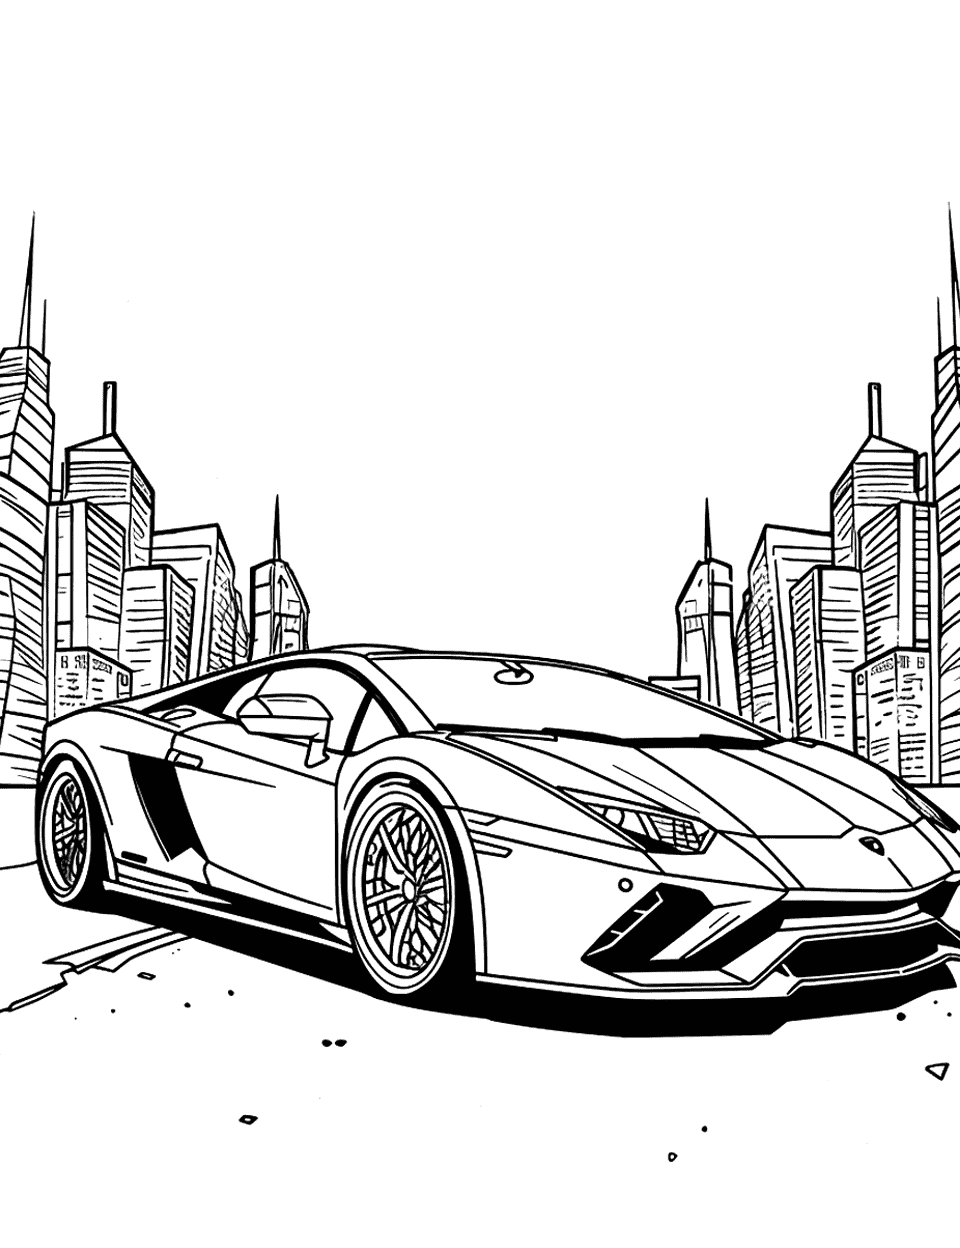 City Night Drive Lamborghini Coloring Page - A Lamborghini cruising through a city at night.